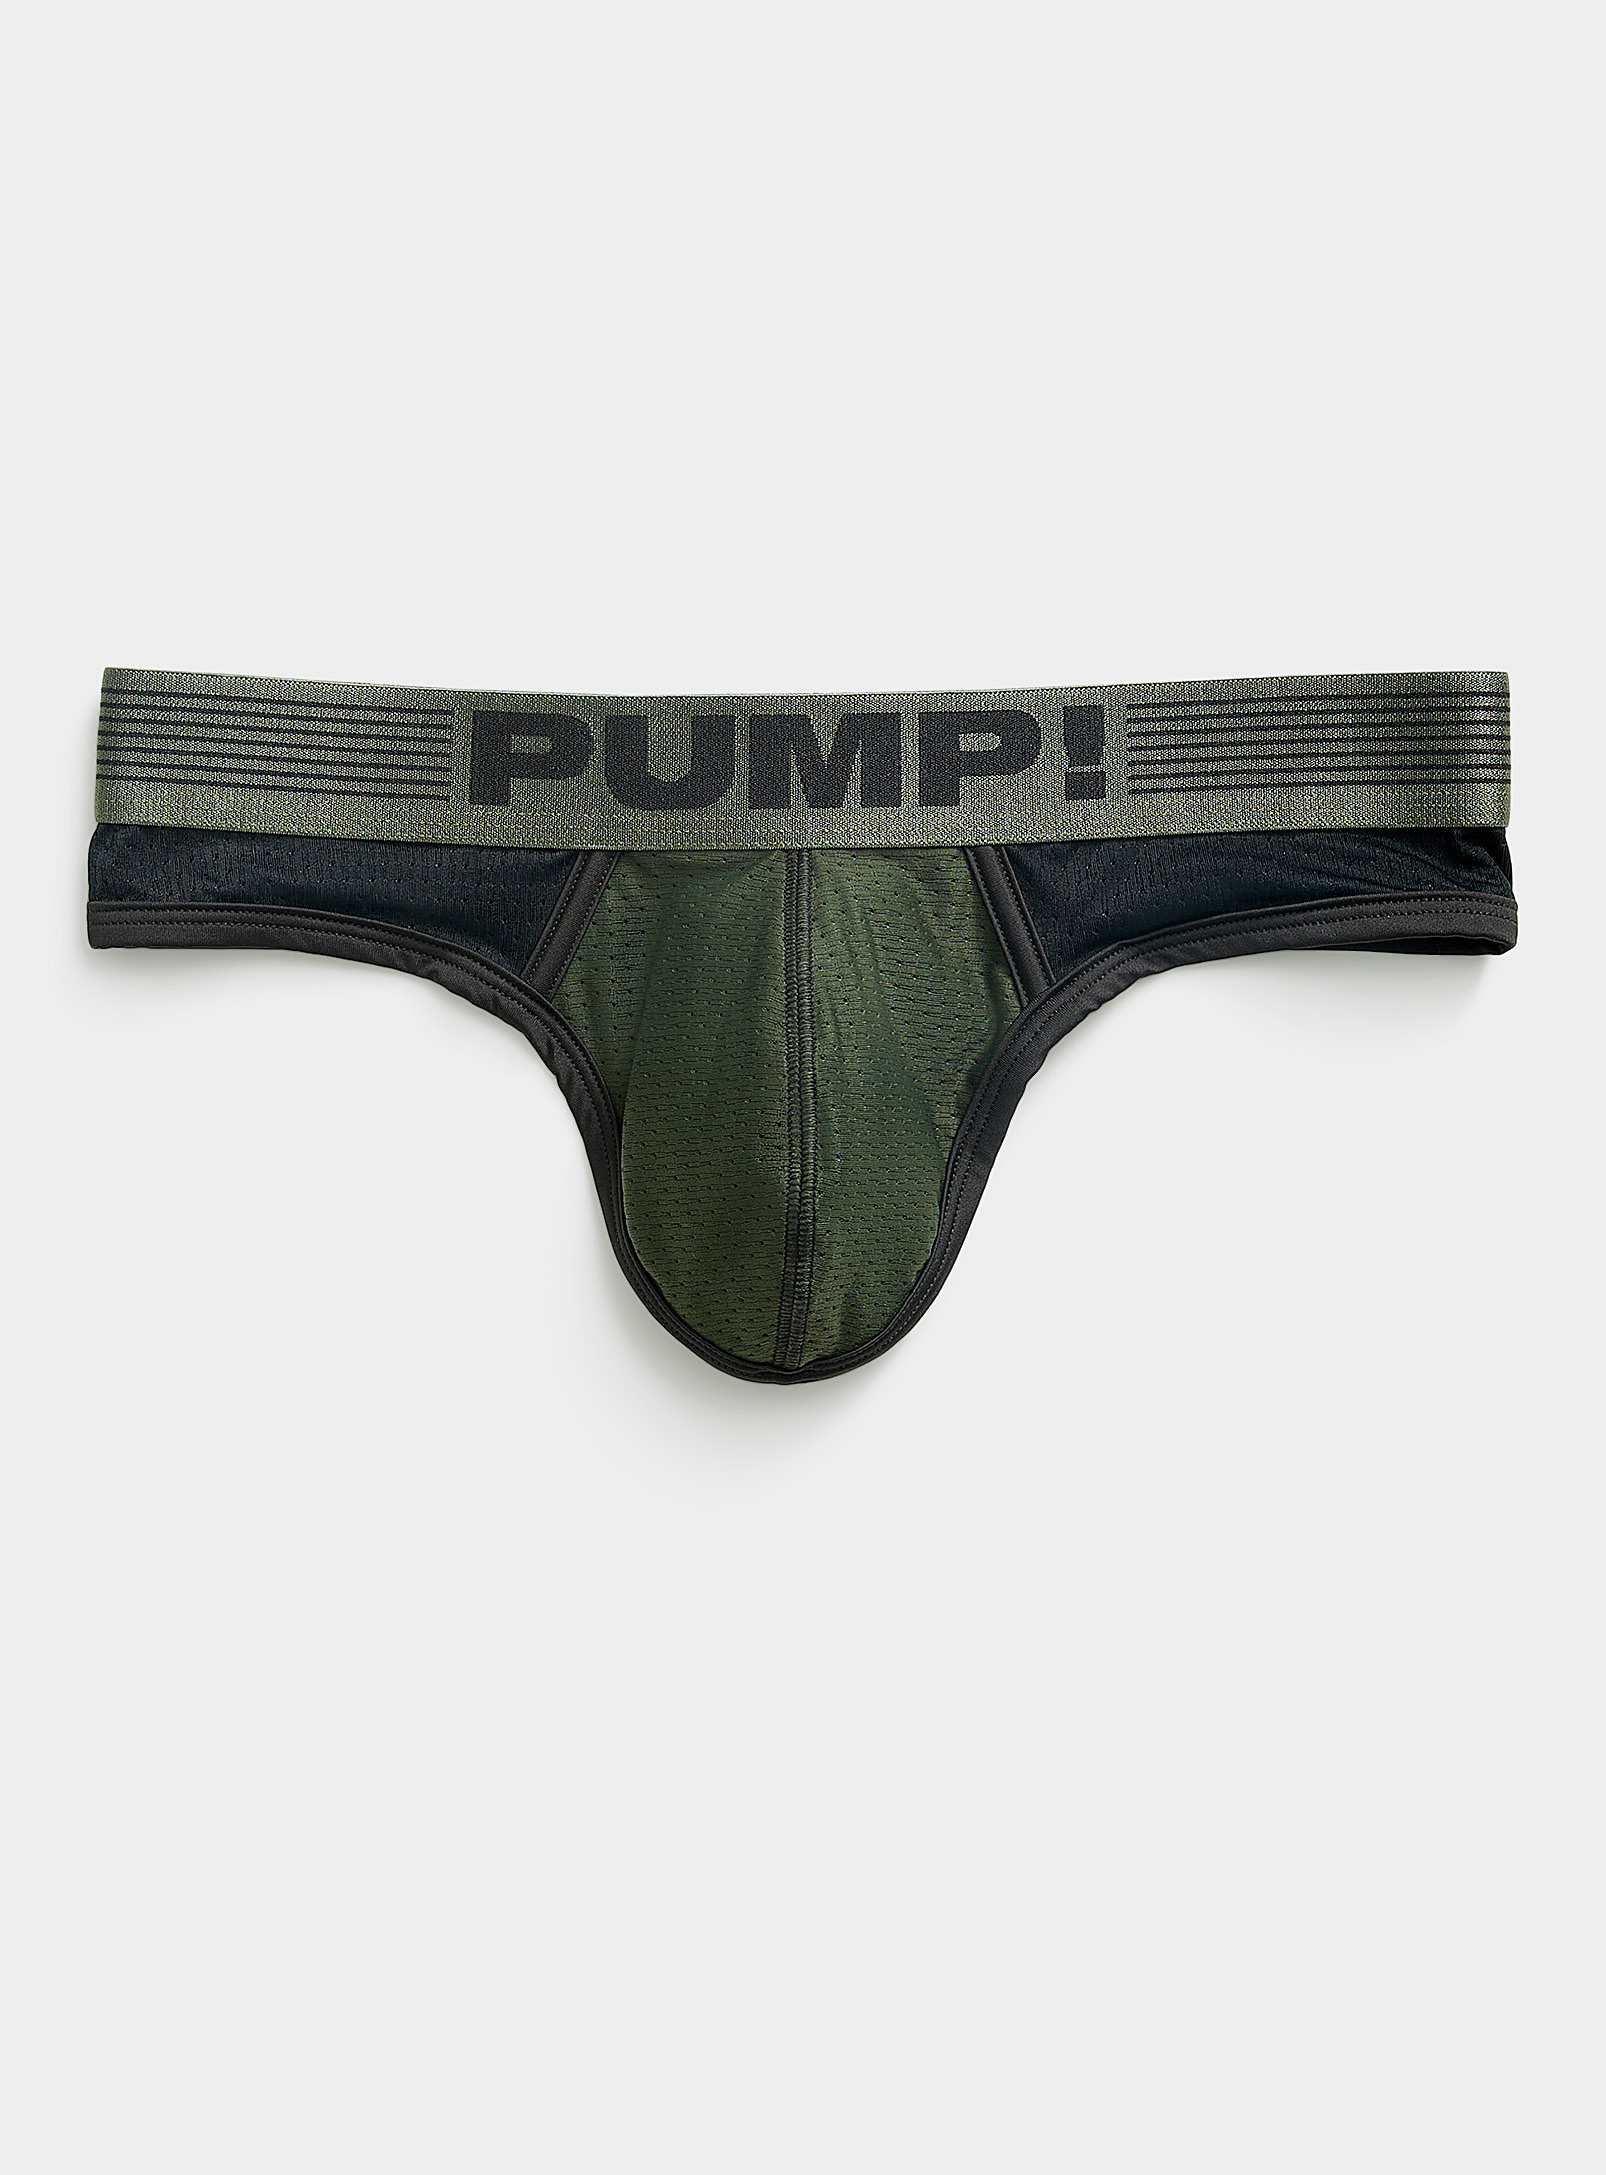 Pump! - Men's Military thong